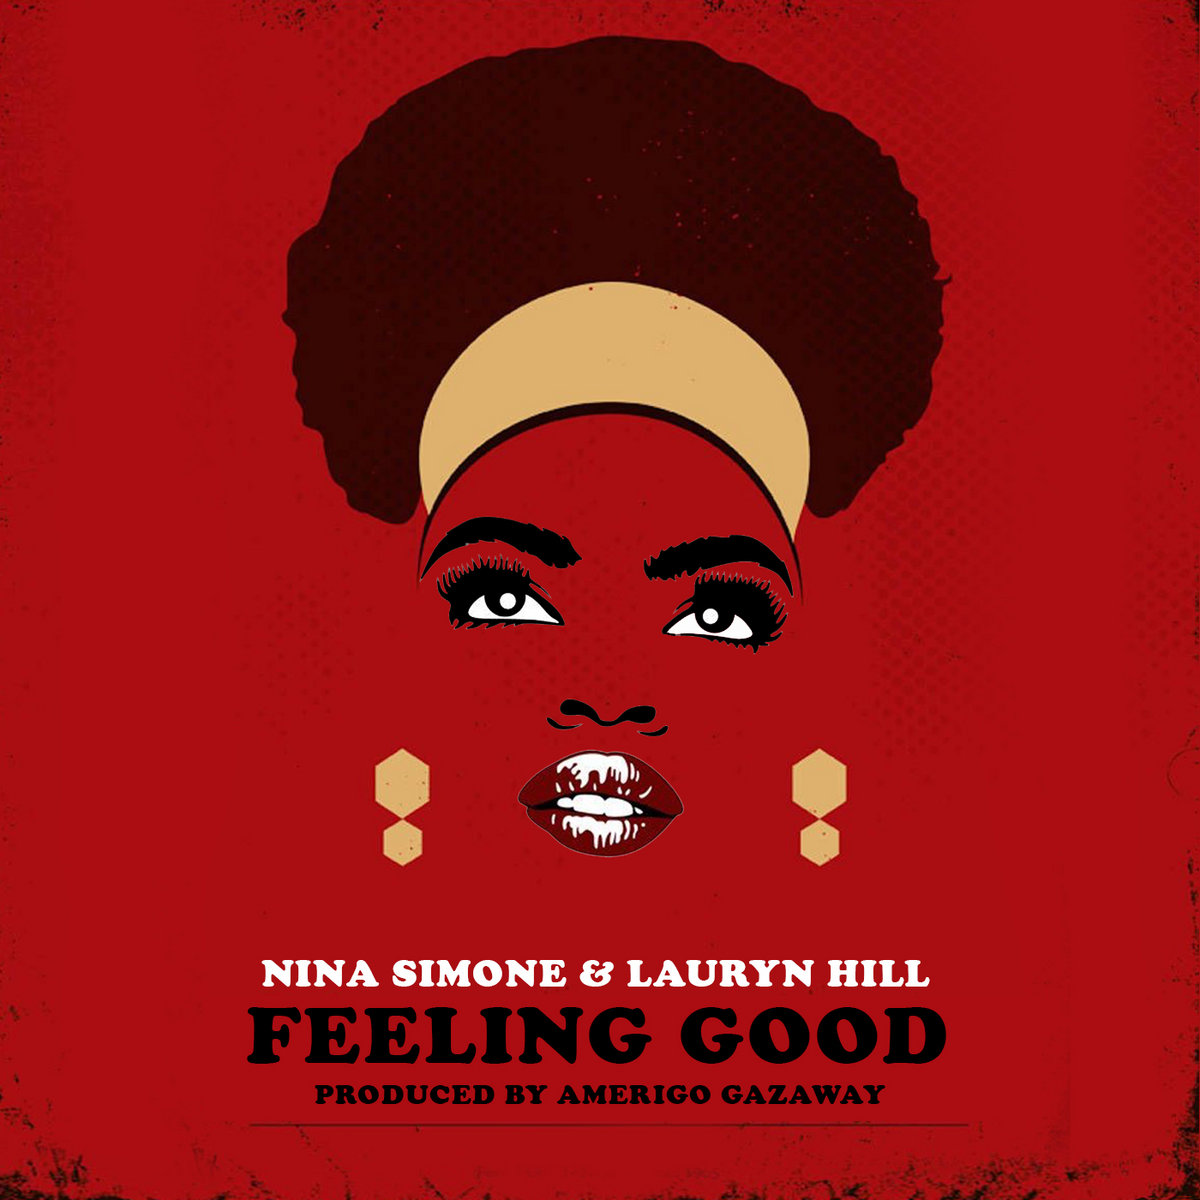 Sometimes good feeling. Nina Simone feeling. Feeling good обложка.